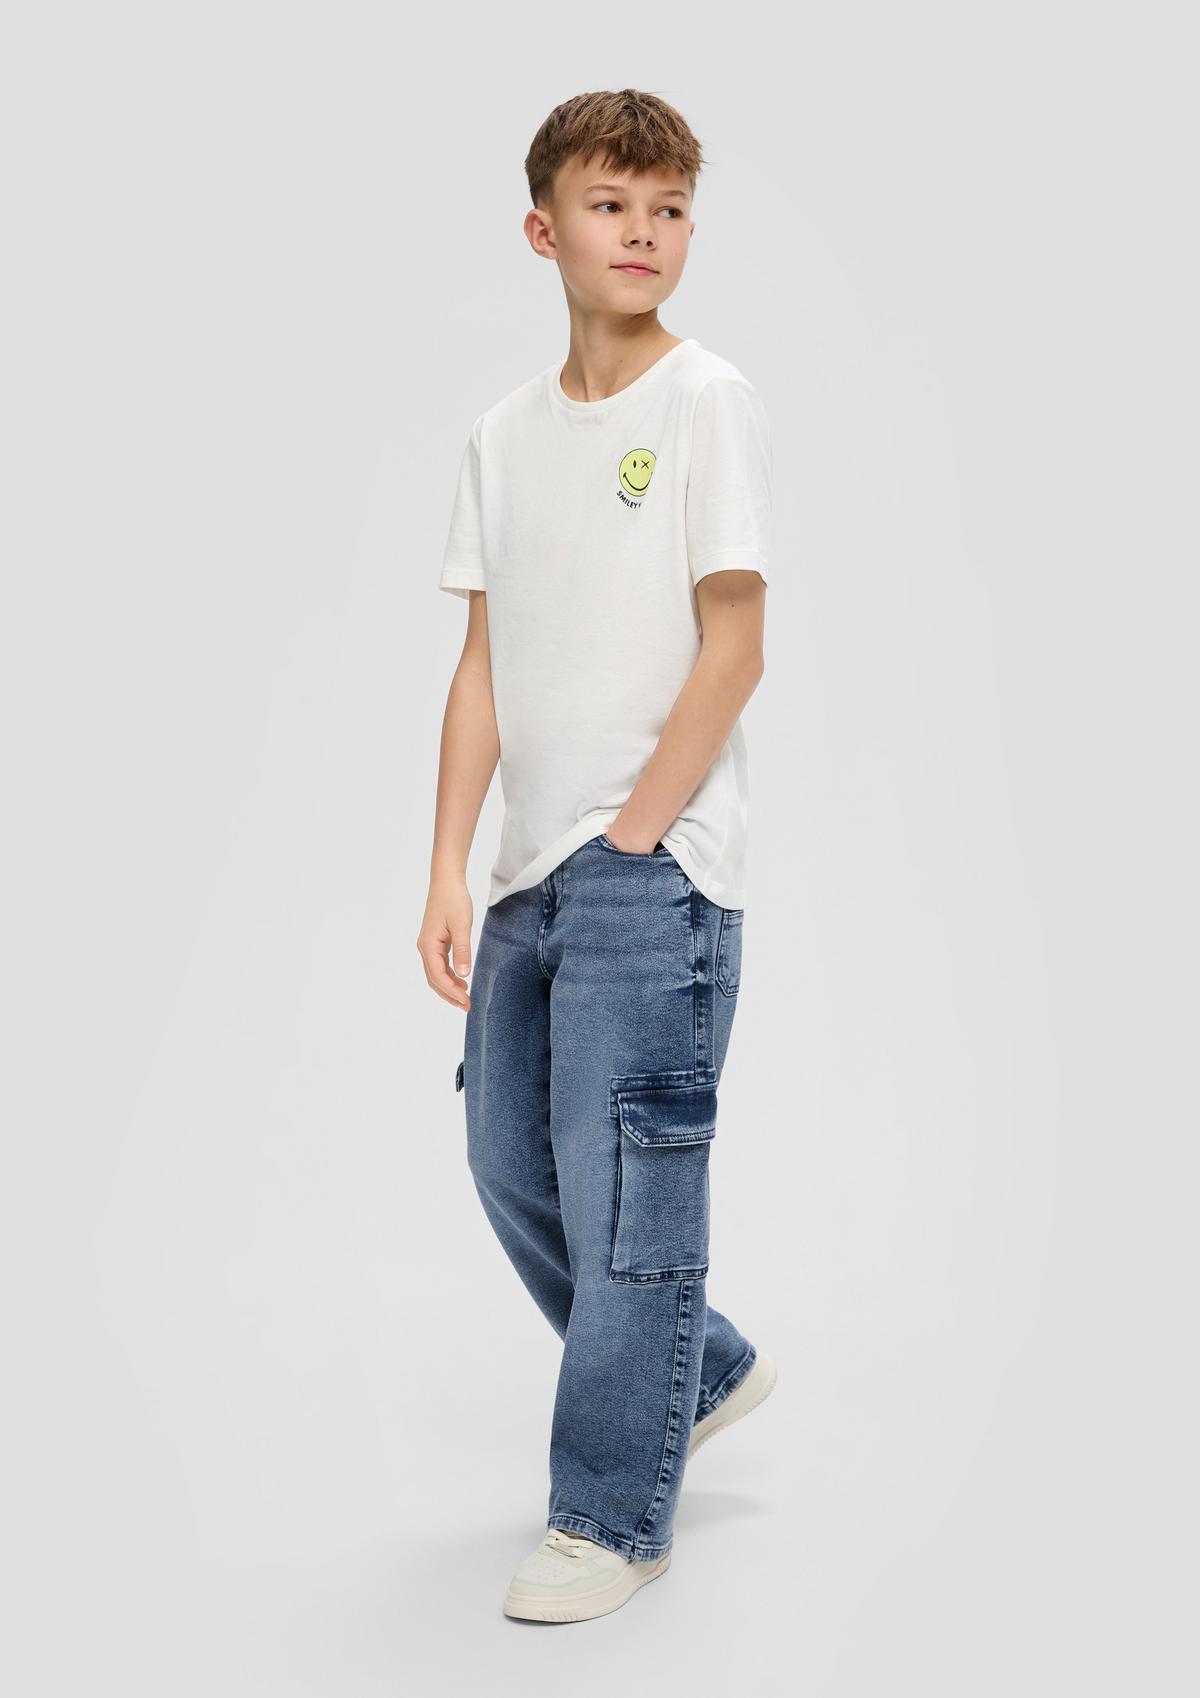 s.Oliver Jeans / regular fit / mid rise / slim fit